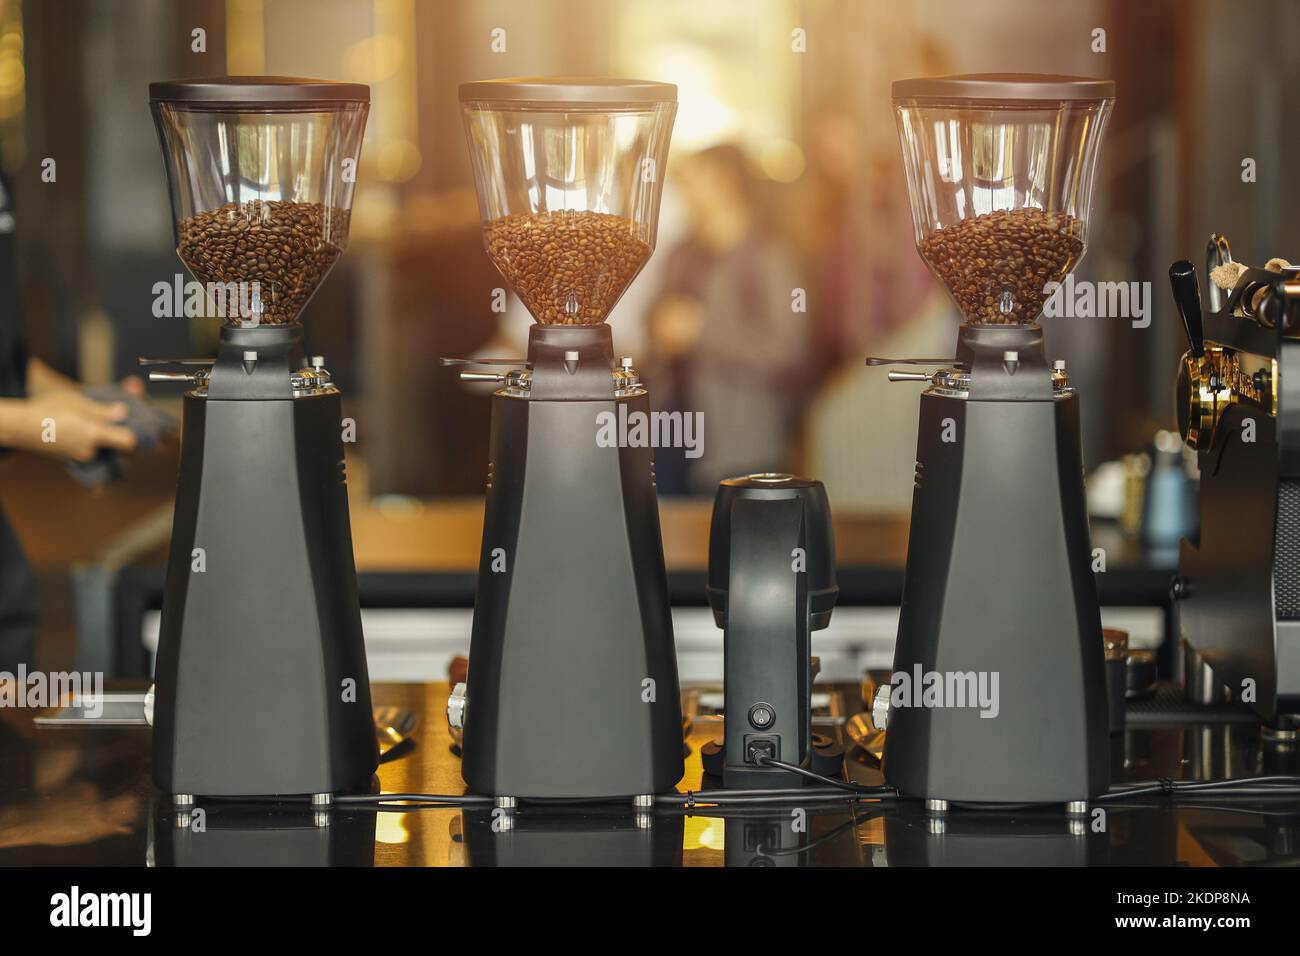 Mehrere Kaffeemühle Maschine für jede Art von Kaffeebohne in Spezialkaffee Geschäft Stockfoto